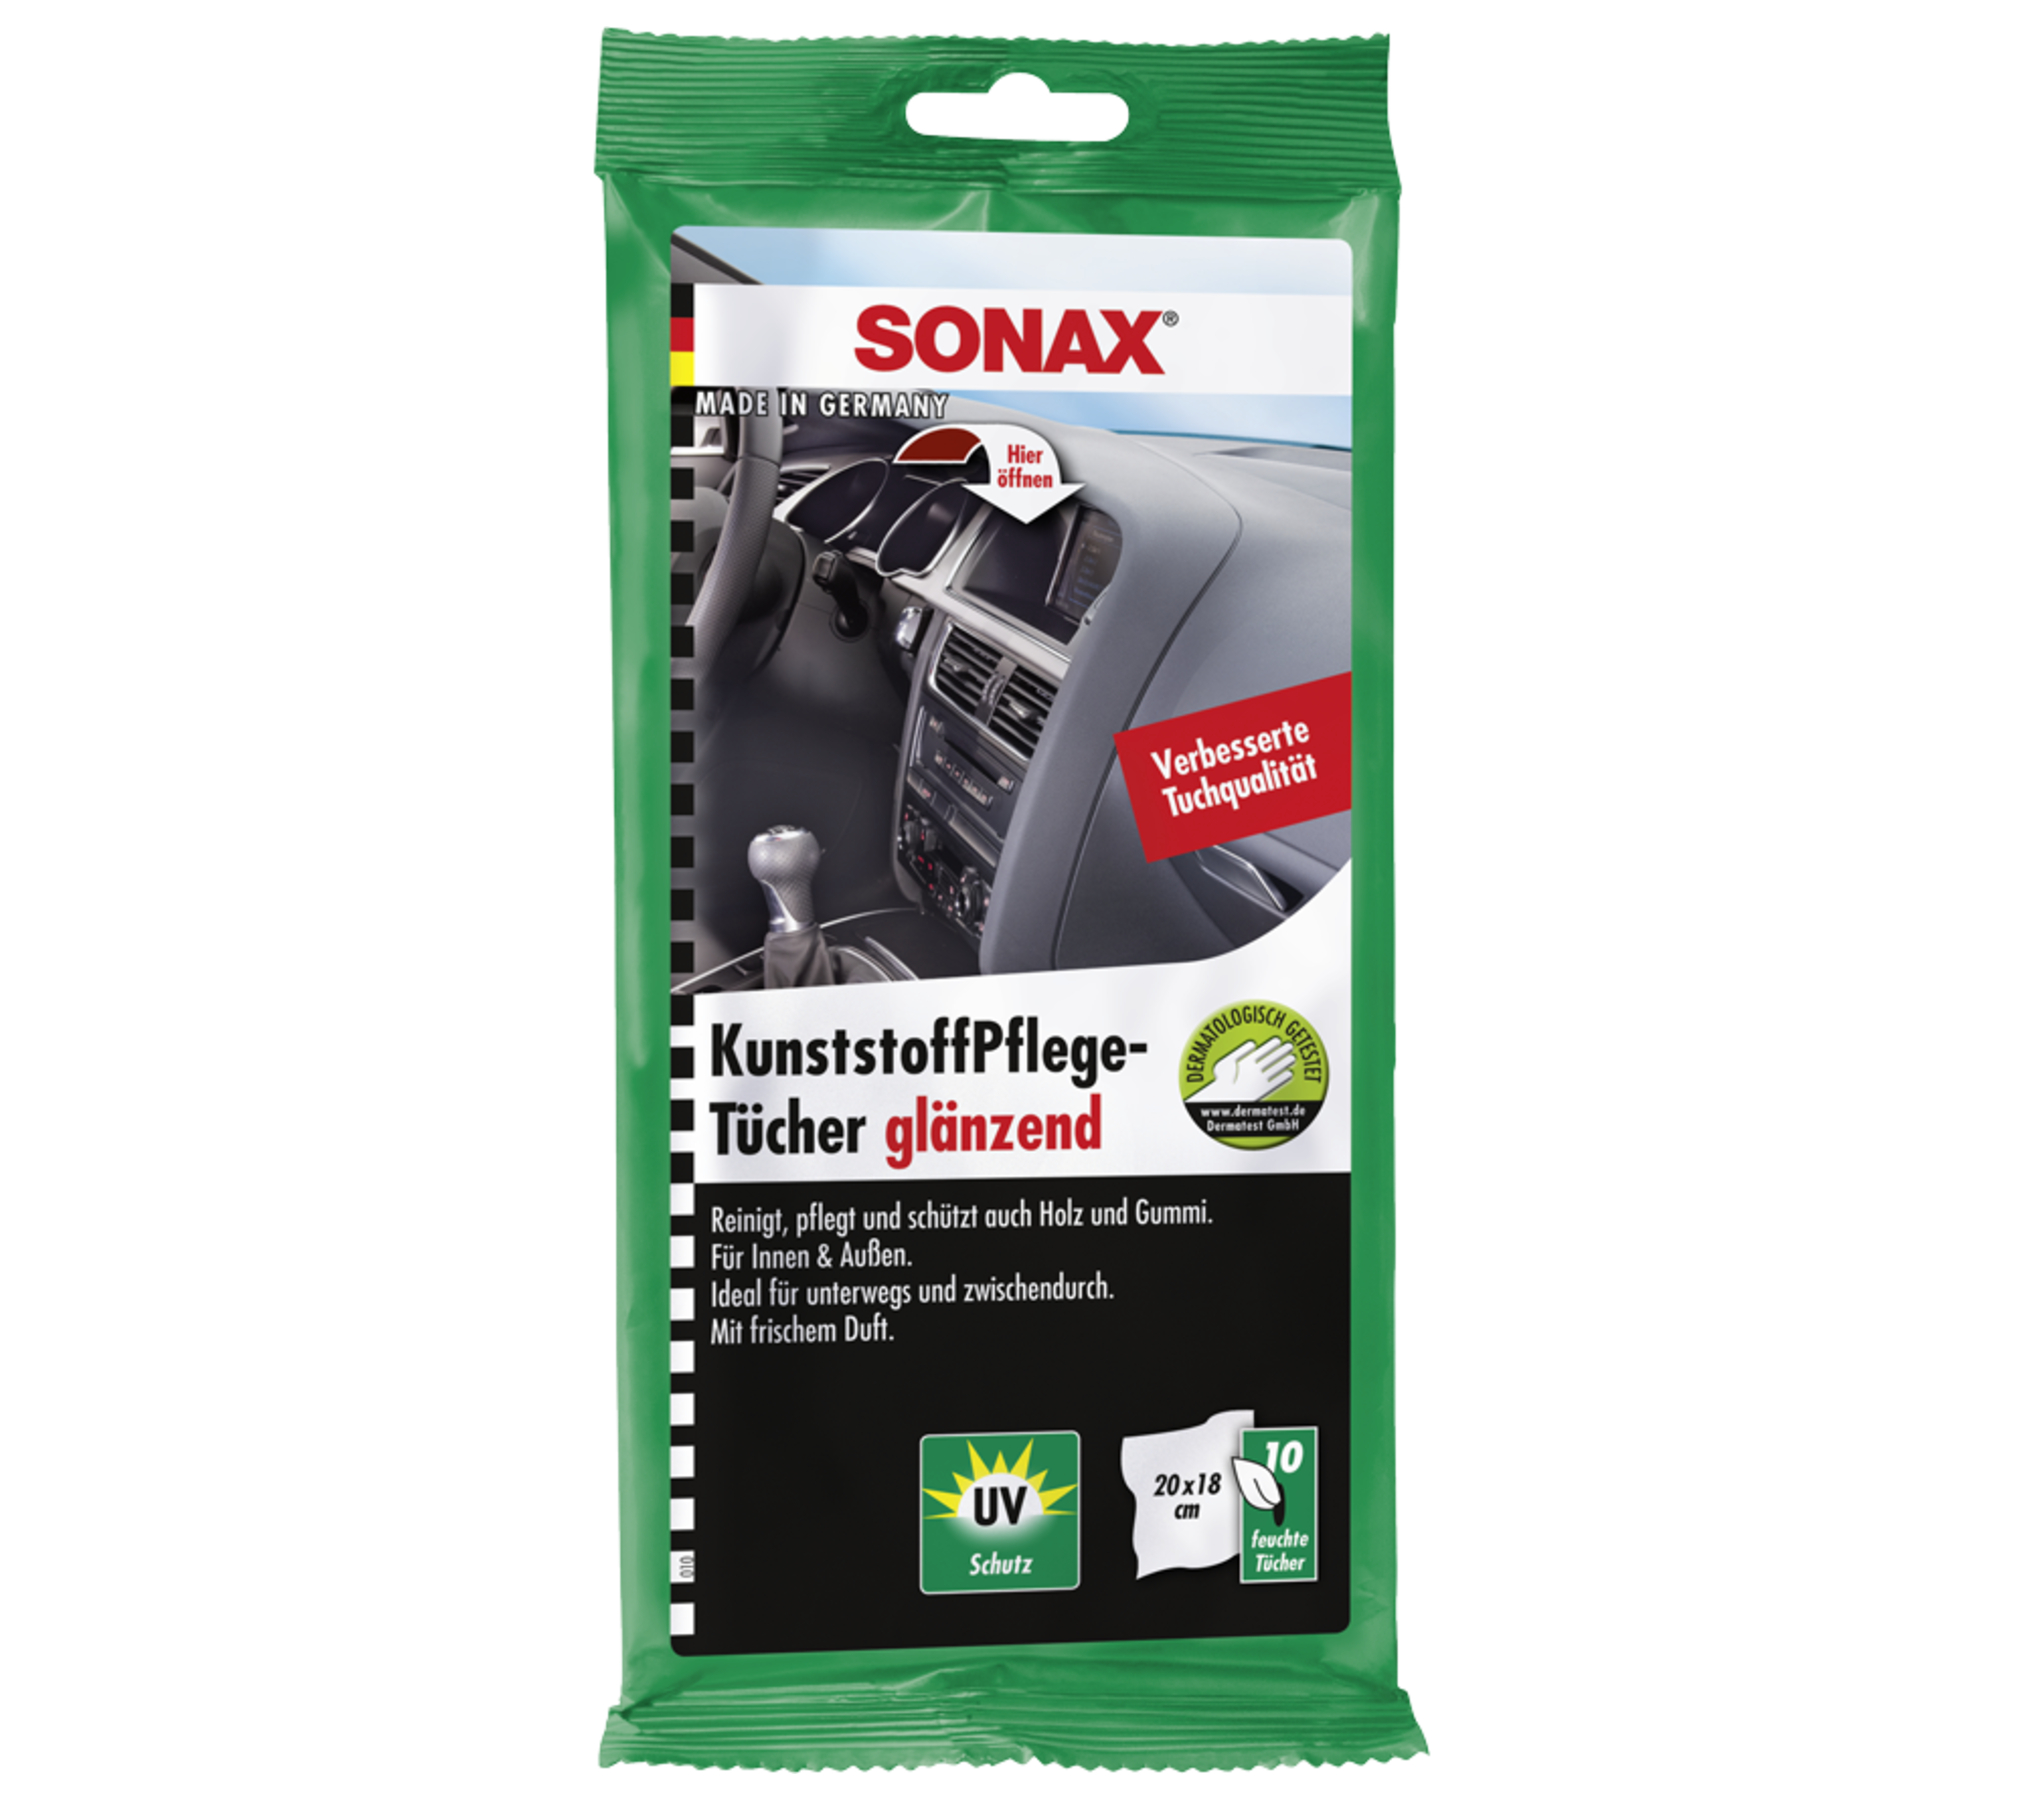 SONAX KunststoffPflegeTücher glänzend 10 Stk.